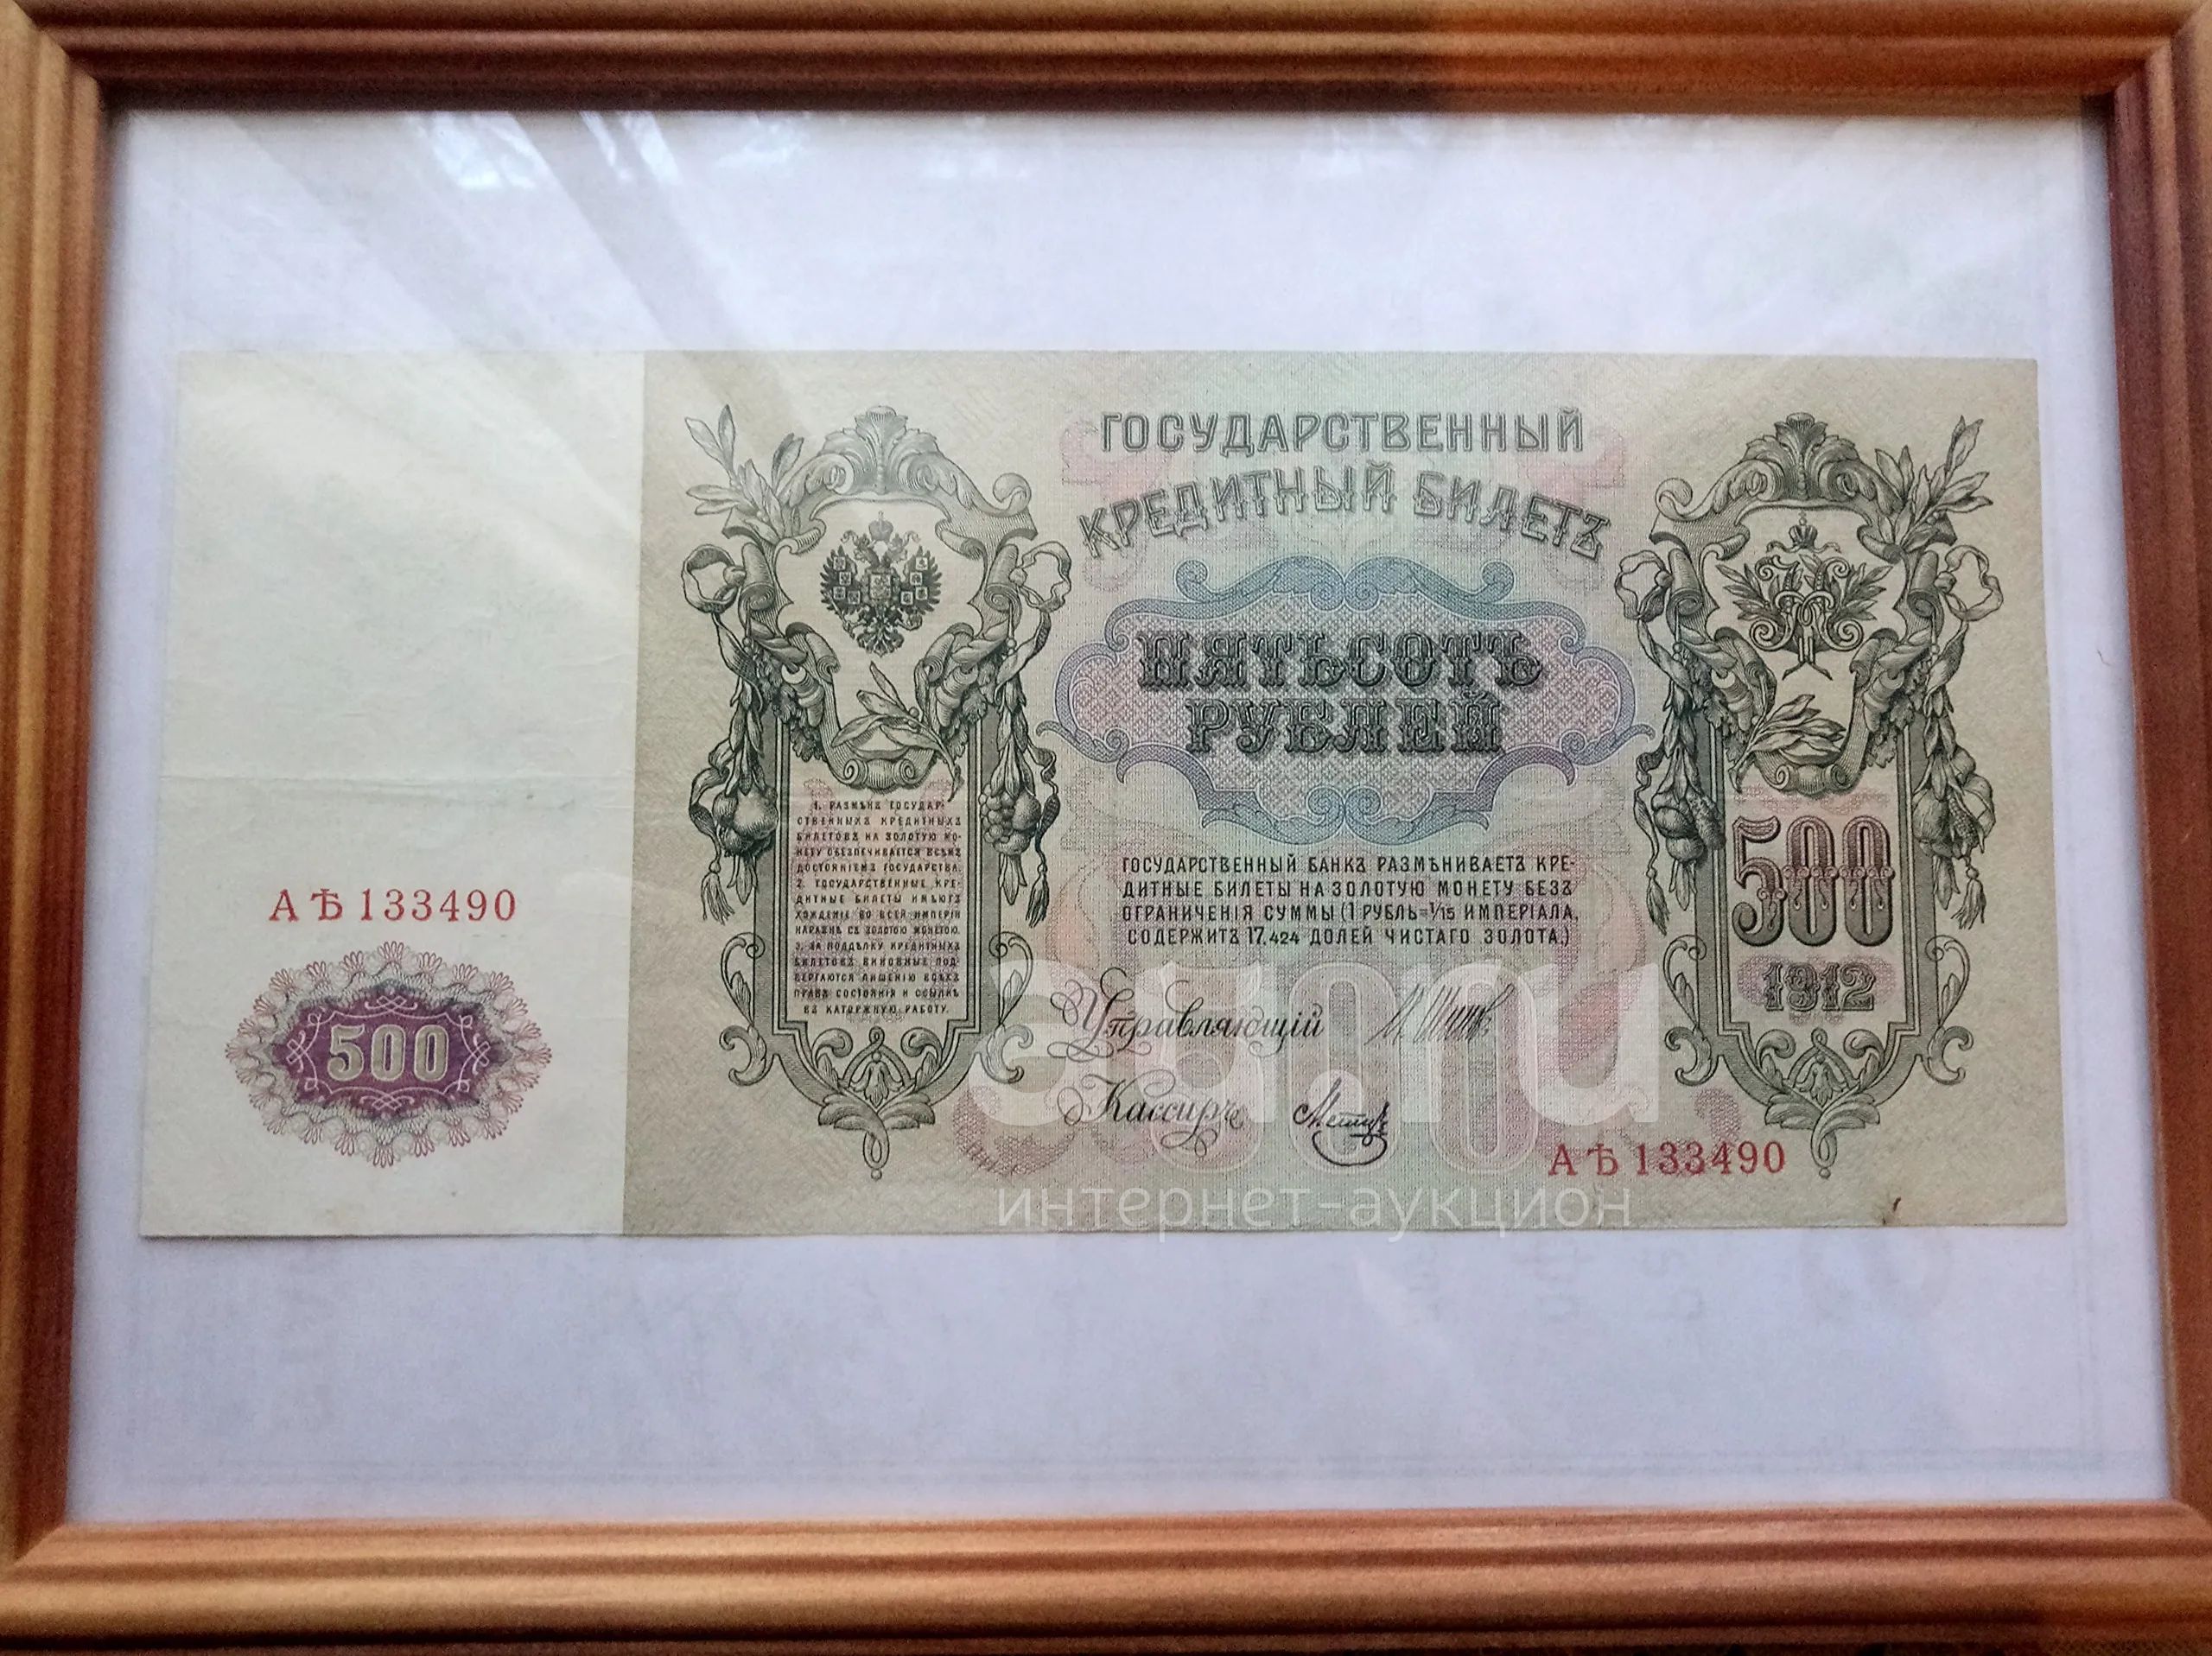 Купюра мм. 500 Рублей 1912. Банкнота 500 рублей 1912 года фото.